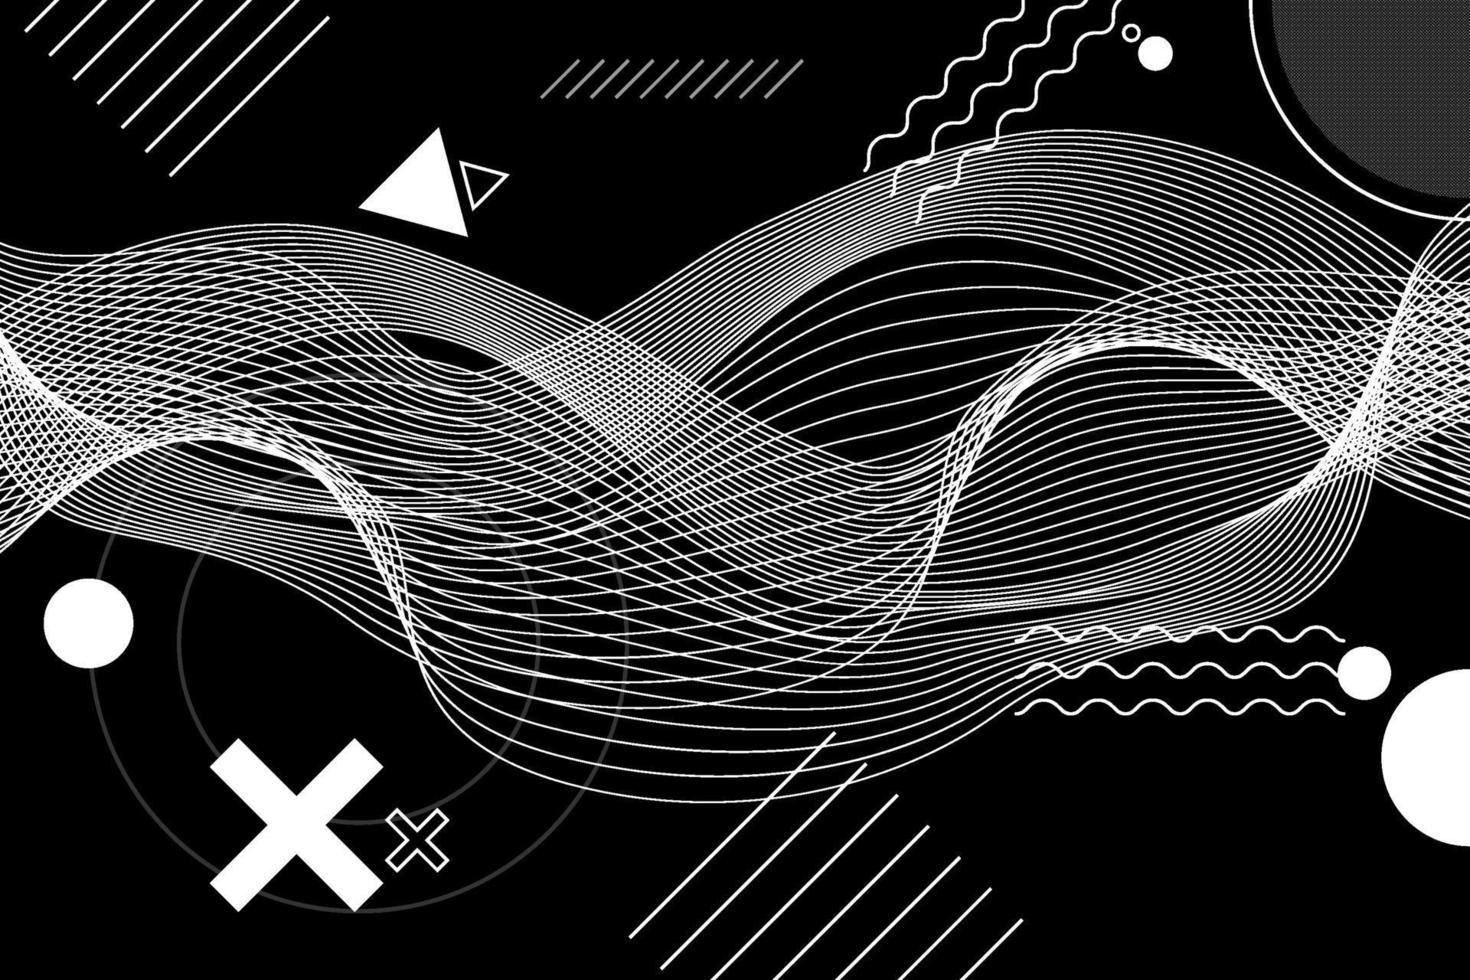 fundo abstrato arte generativa preto e branco com composição geométrica neo-memphis. ilustração conceitual de tecnologias de alta tecnologia, cyberpunk de realidade futura ou virtual. vetor